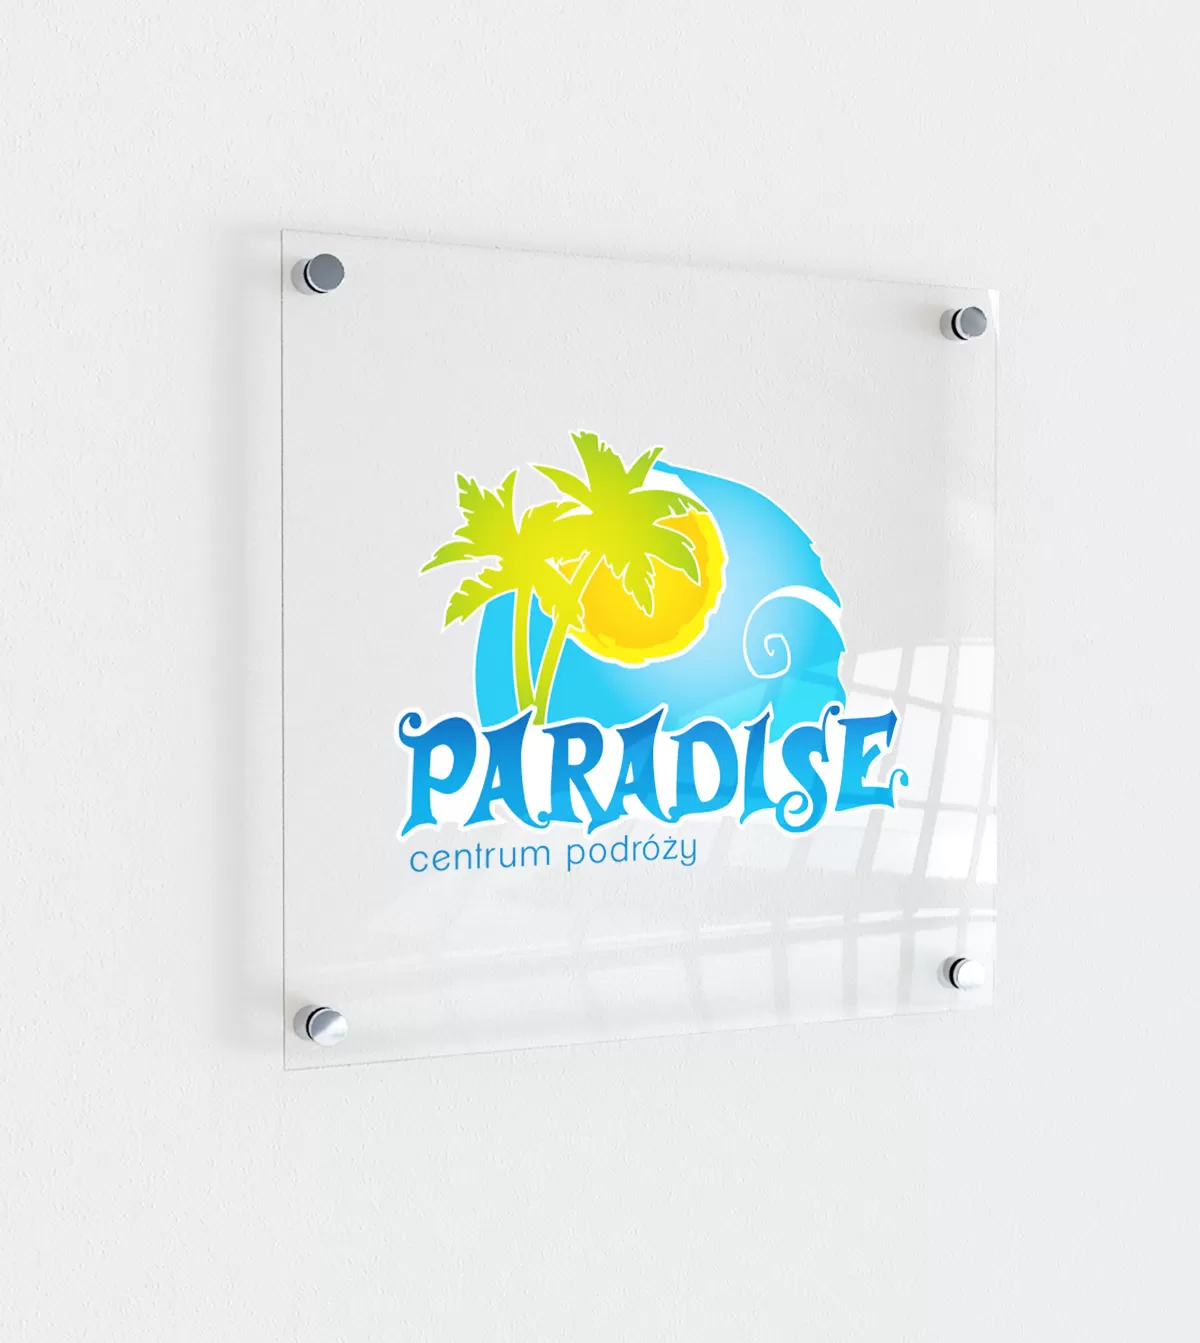 PARADISE biuro podróży - projekt odświeżenia logo